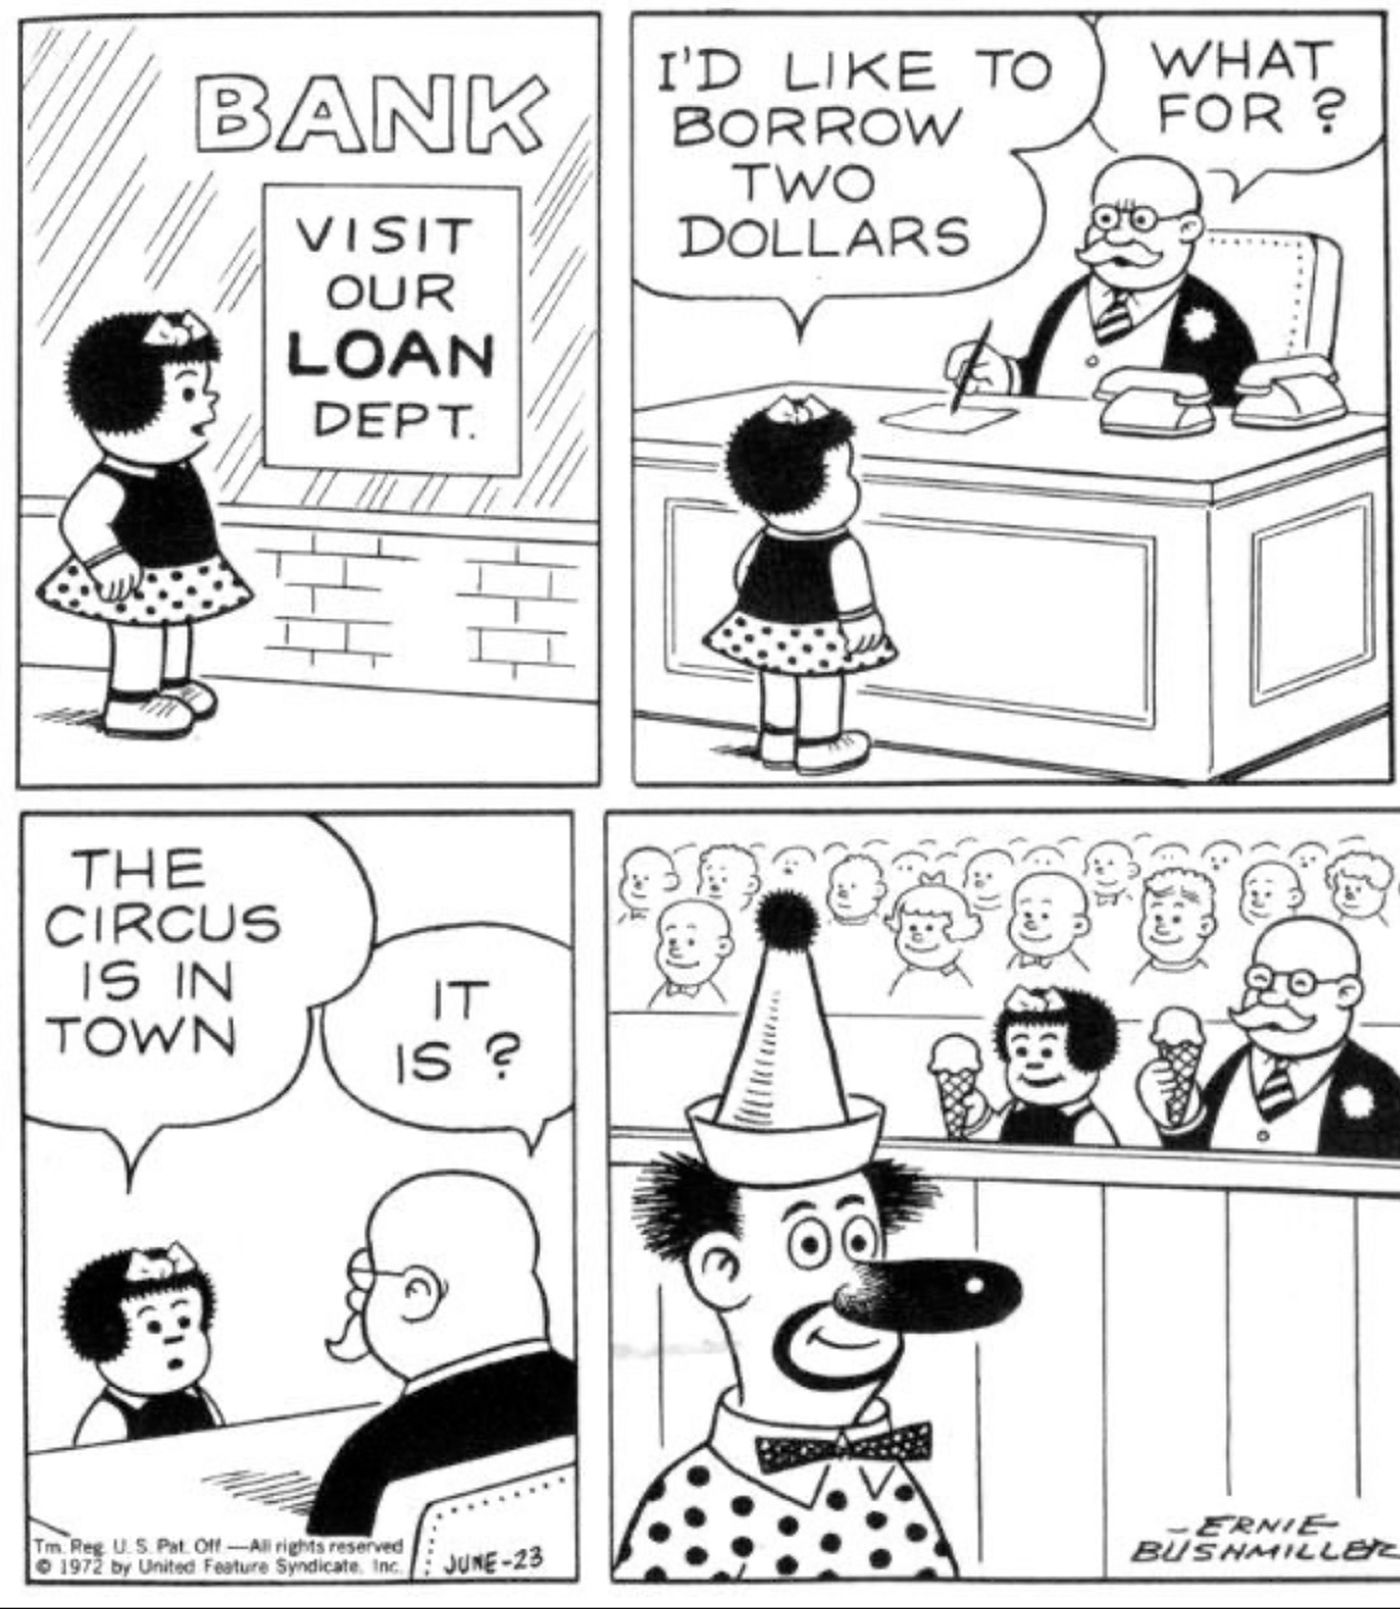 Nancy pede um empréstimo ao banco porque o circo está na cidade.  O gerente do banco, surpreso, vai com ela e os dois tomam sorvete.